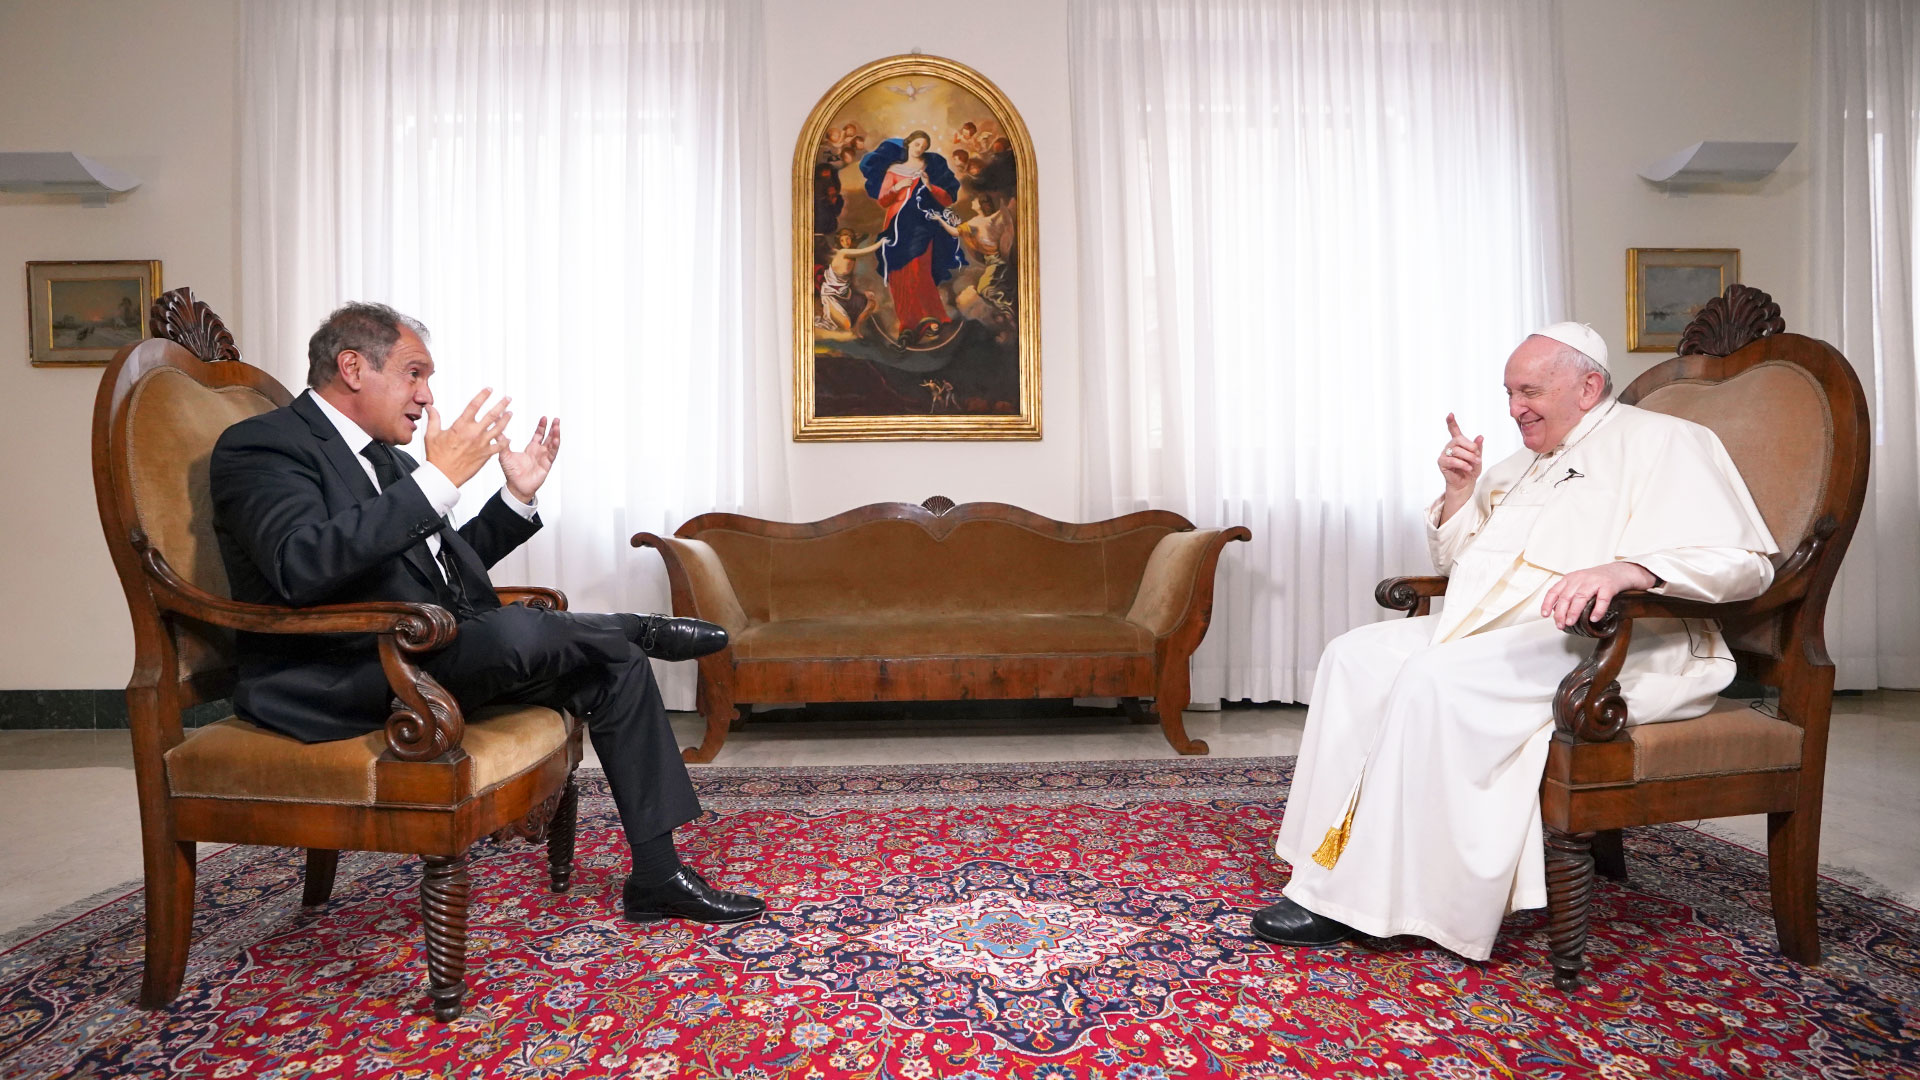 "Por ahí me viene un poco de nostalgia porque no puedo callejear como hacía en Buenos Aires", admitió el Papa.